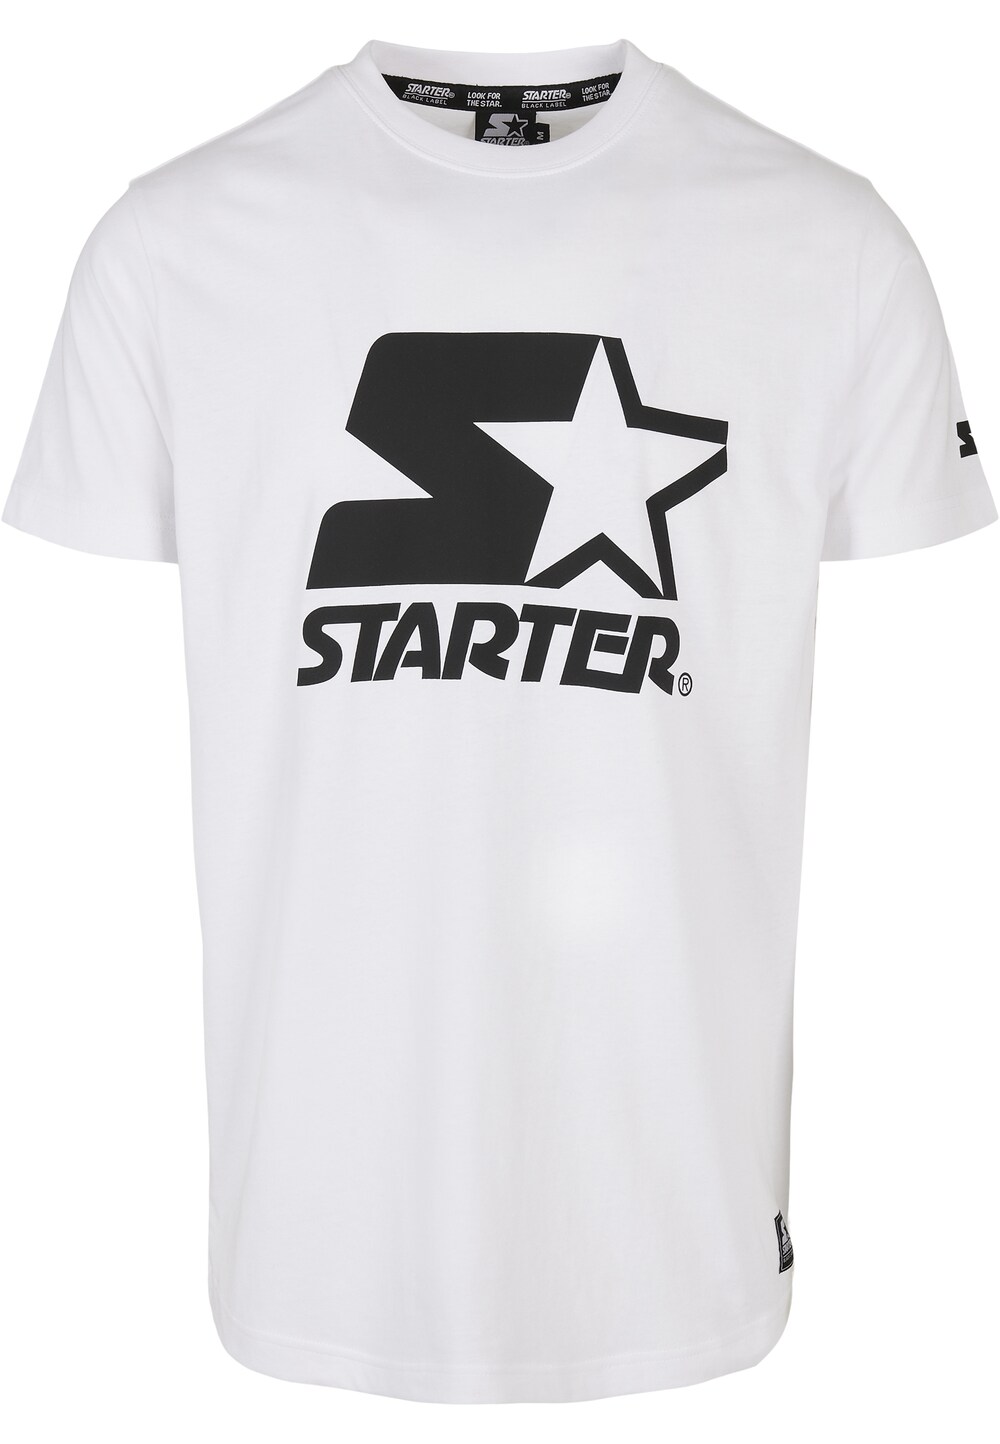 Starter black. Starter бренд. Футболка фирмы Starter. Z Starter футболка.